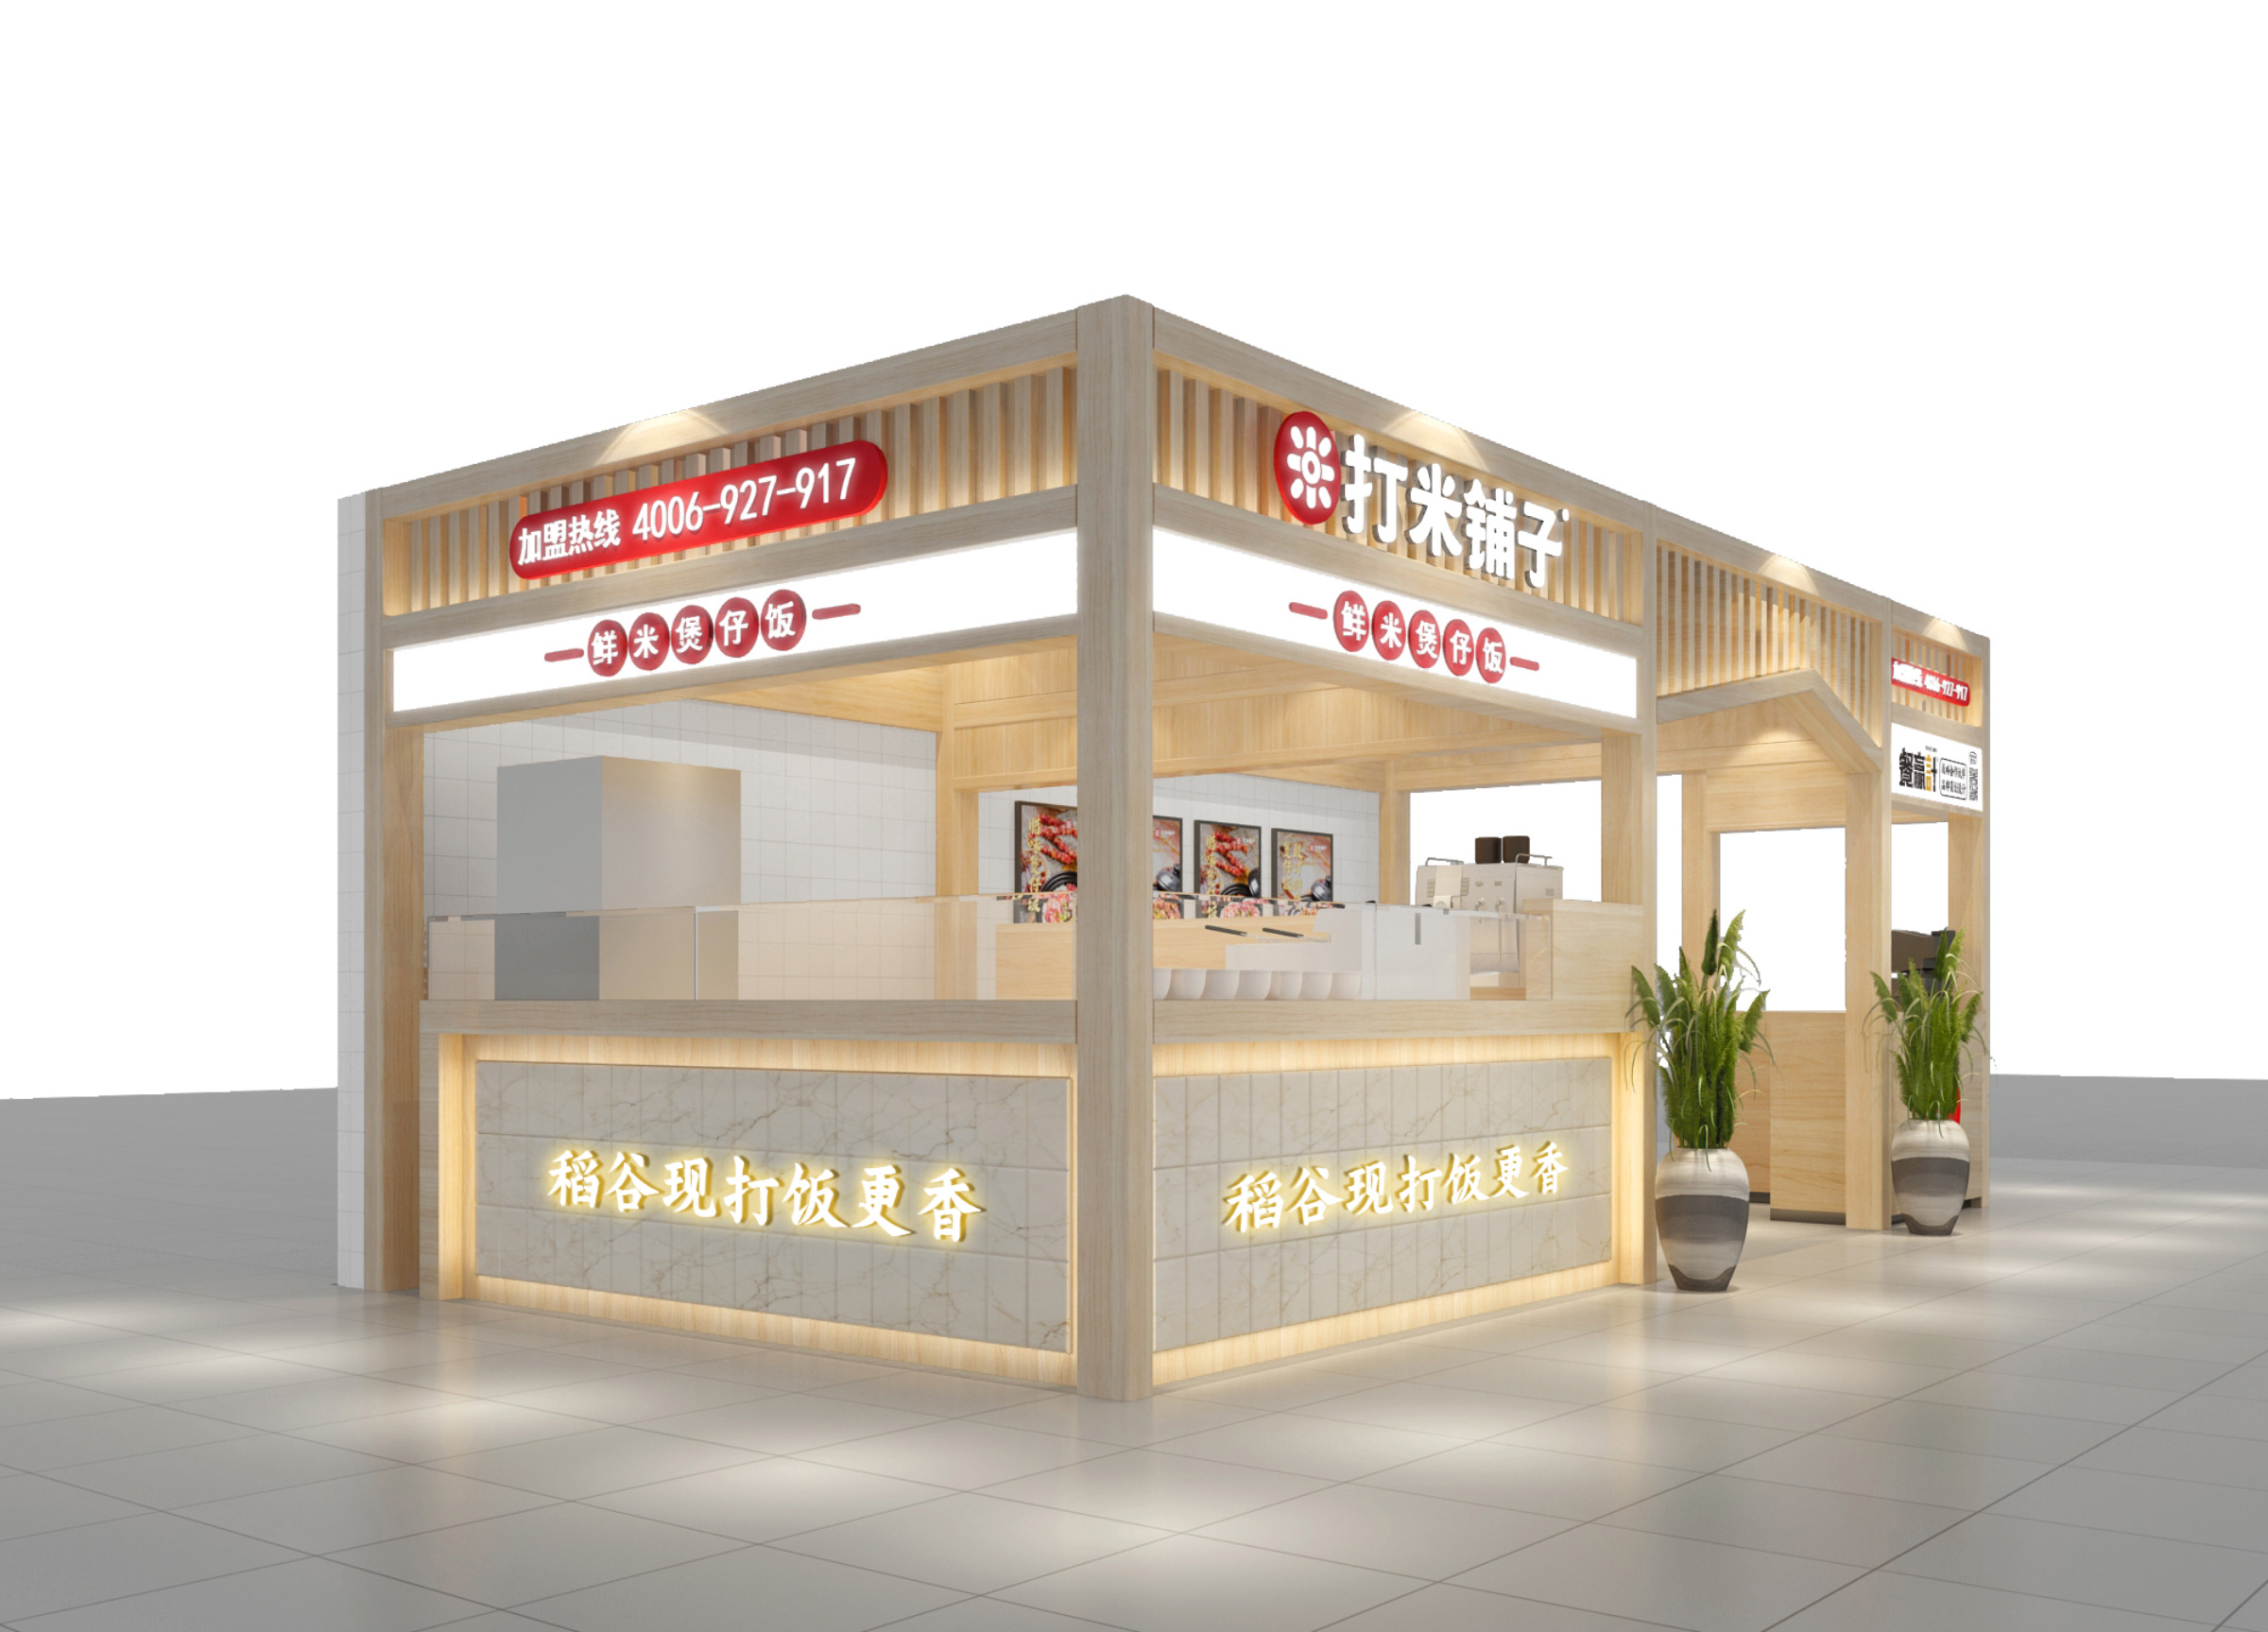 惠州打米铺子餐饮店外观设计